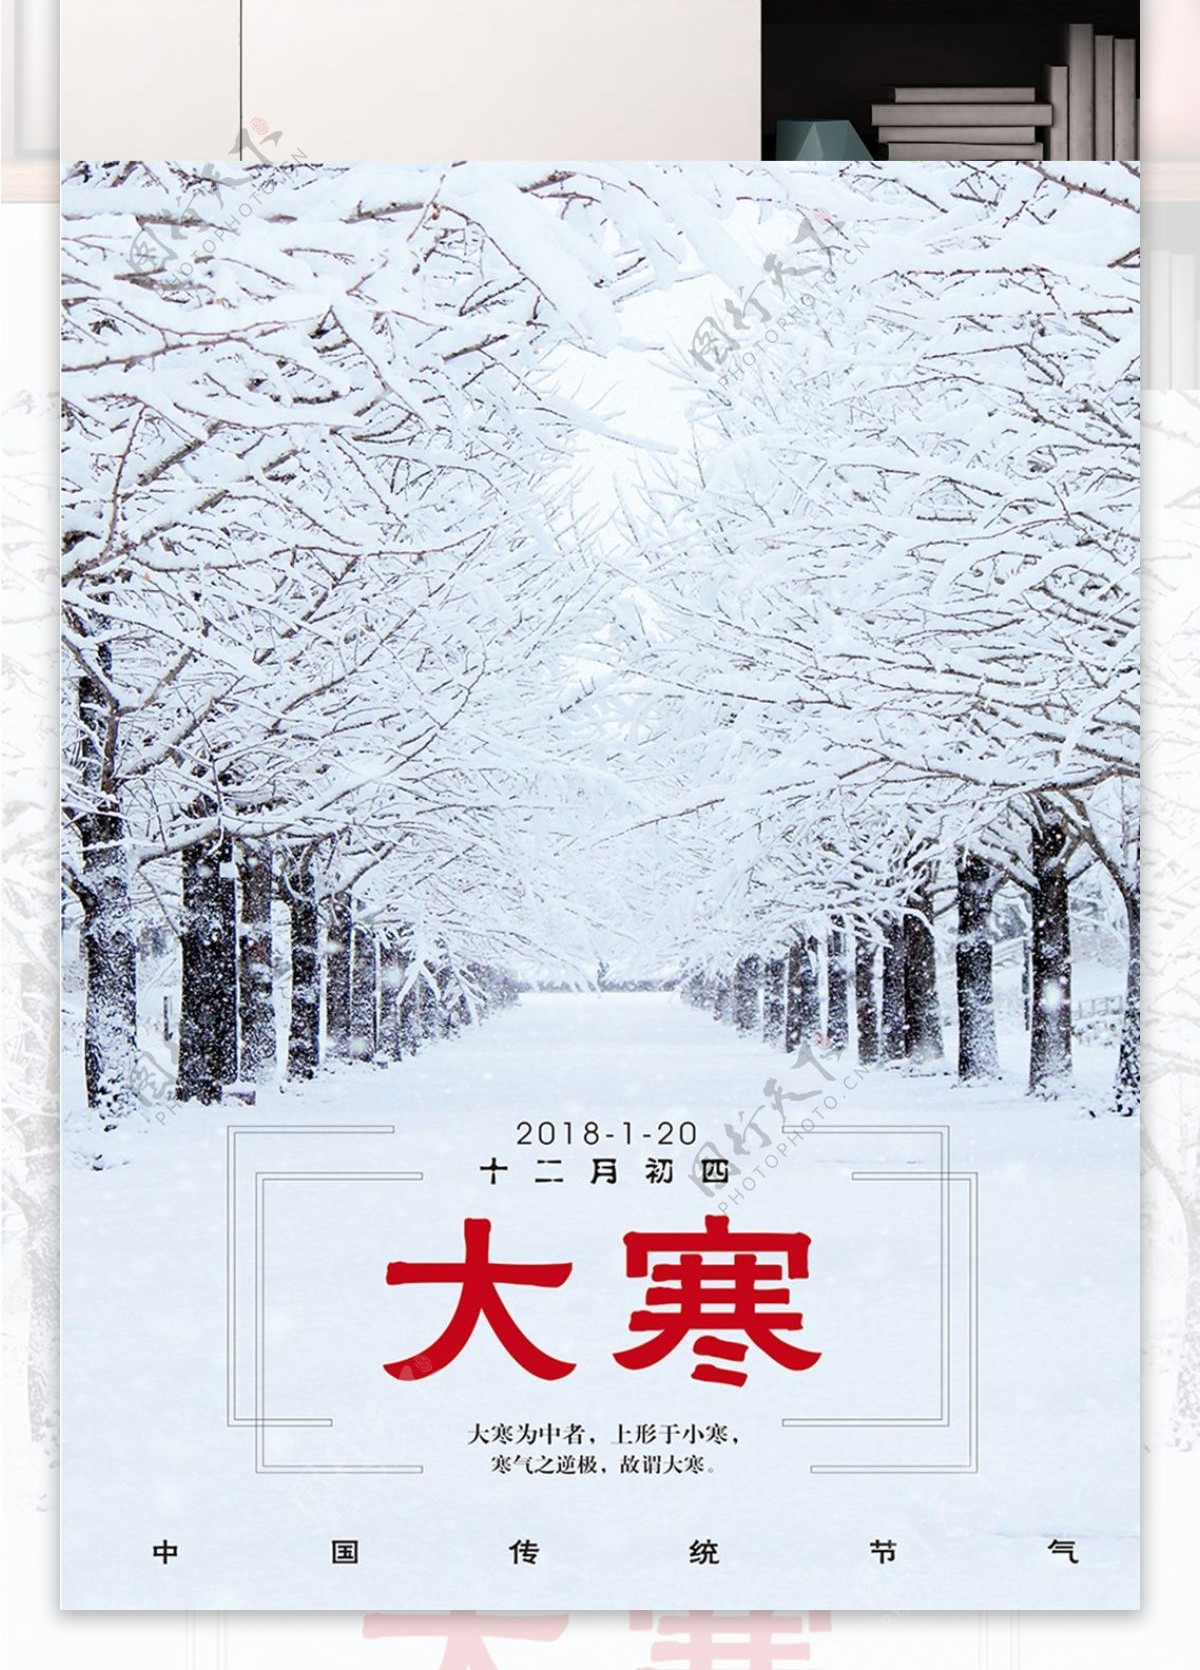 大寒传统节日海报展板